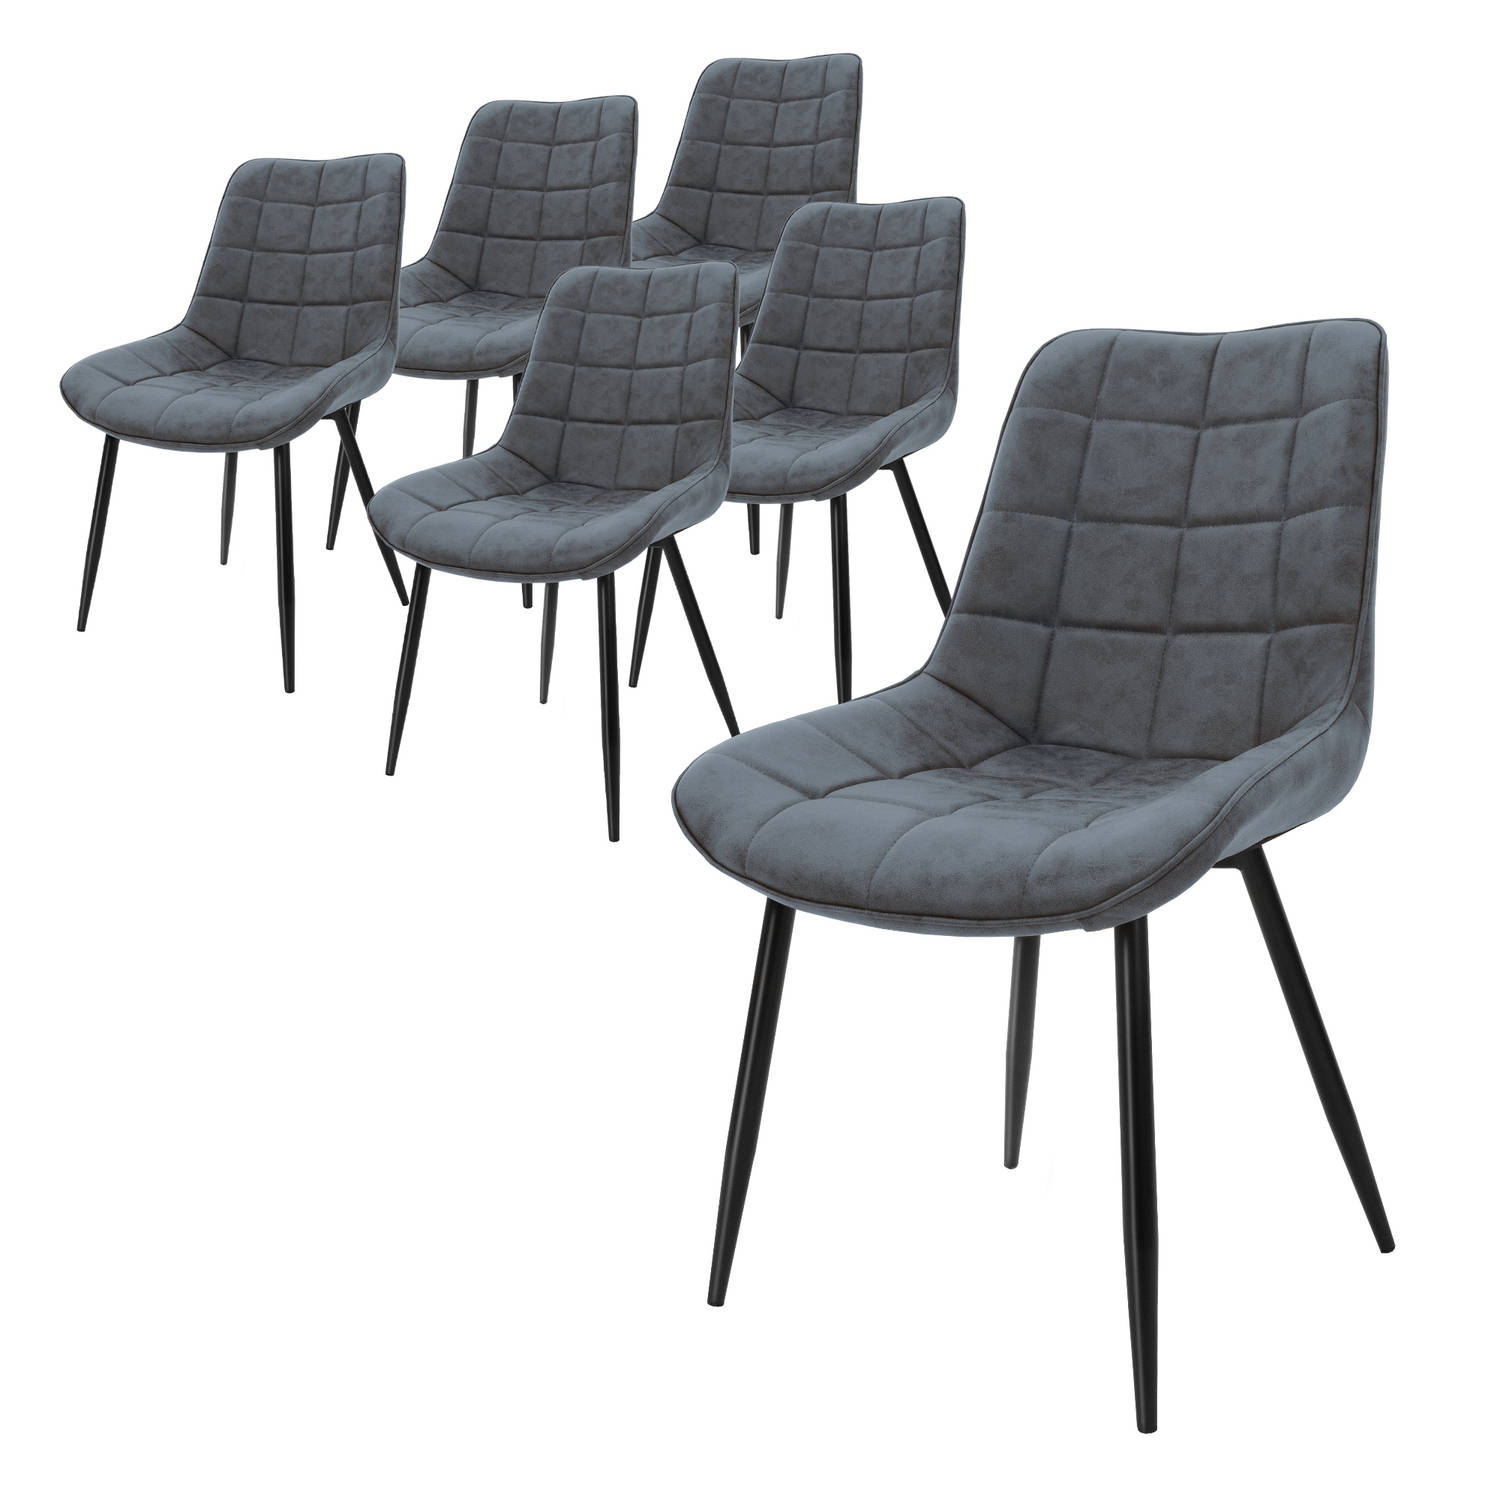 ML-Design set van 6 eetkamerstoelen met rugleuning, antraciet, keukenstoel met kunstleren bekleding, gestoffeerde stoel met metalen poten, ergonomische eettafelstoel, woonkamerstoe